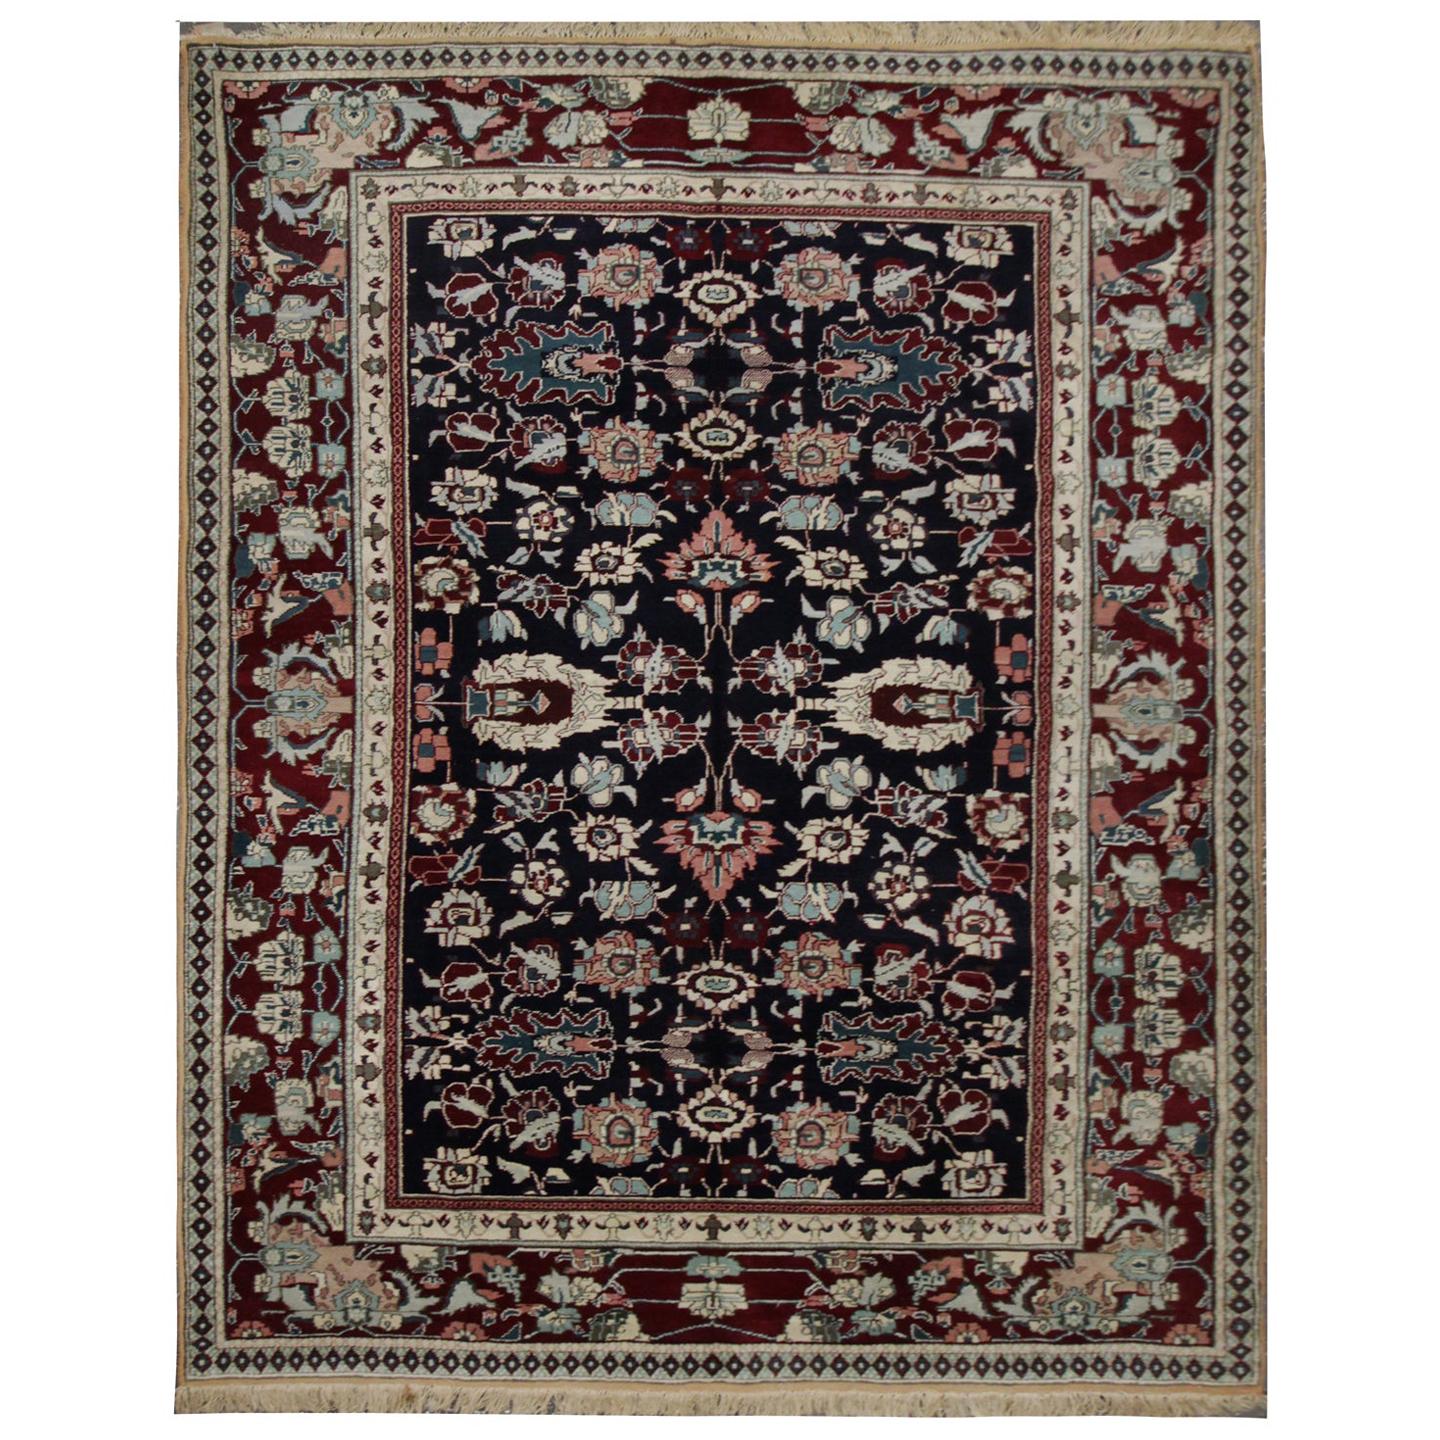 Handgefertigter antiker Teppich Indischer traditioneller rot-schwarzer Wollteppich